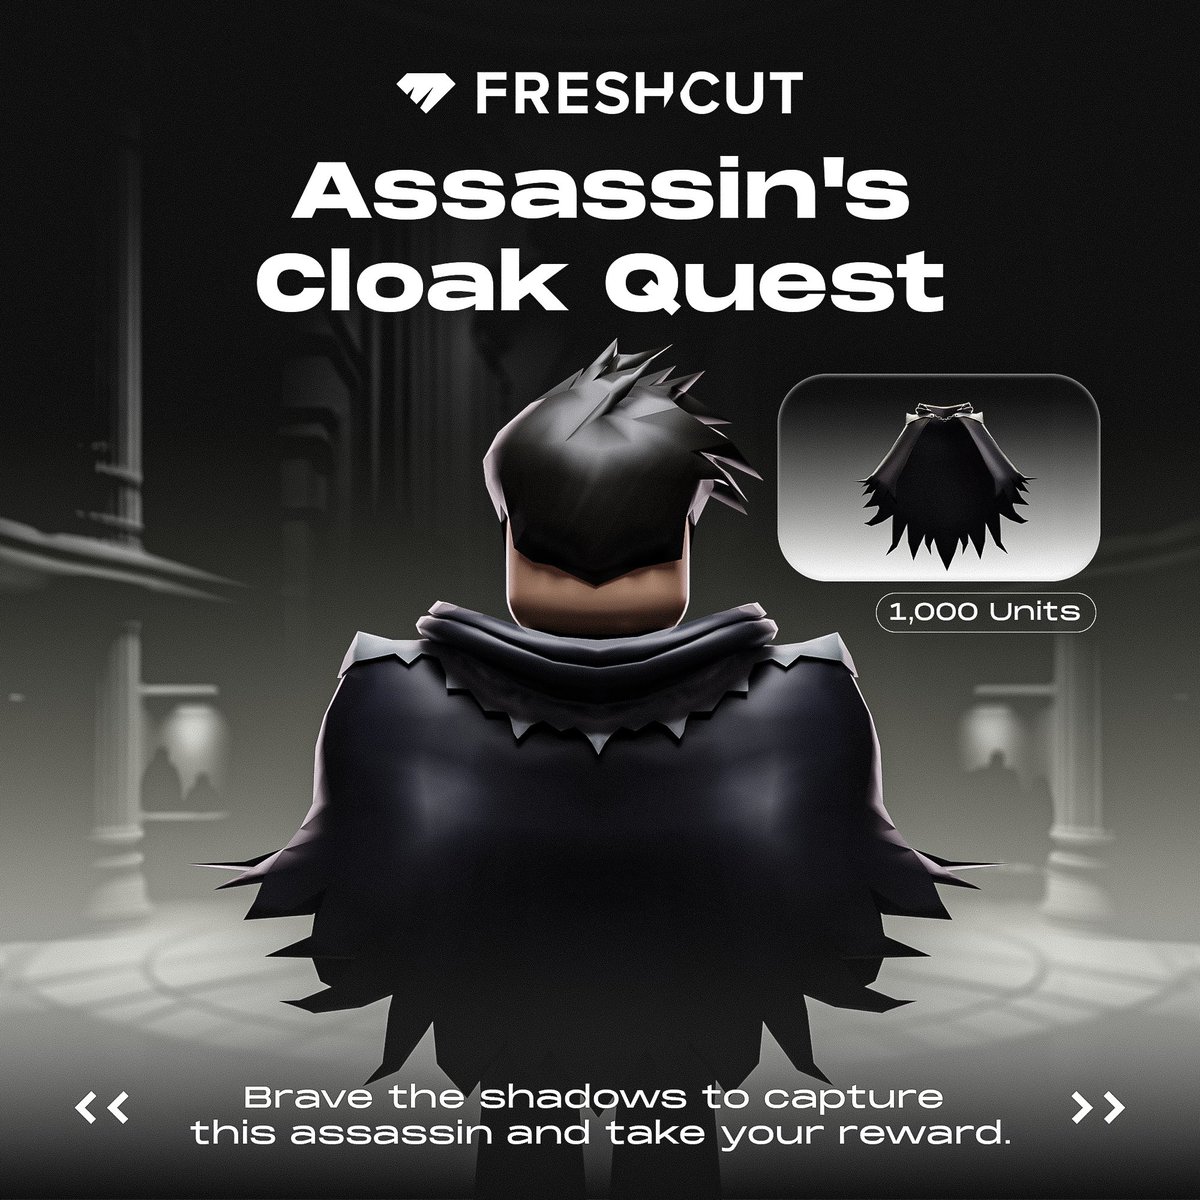 Assassin's Cloak UGC just drops in 5 MINUTES 👀
Show us your serials! 👇